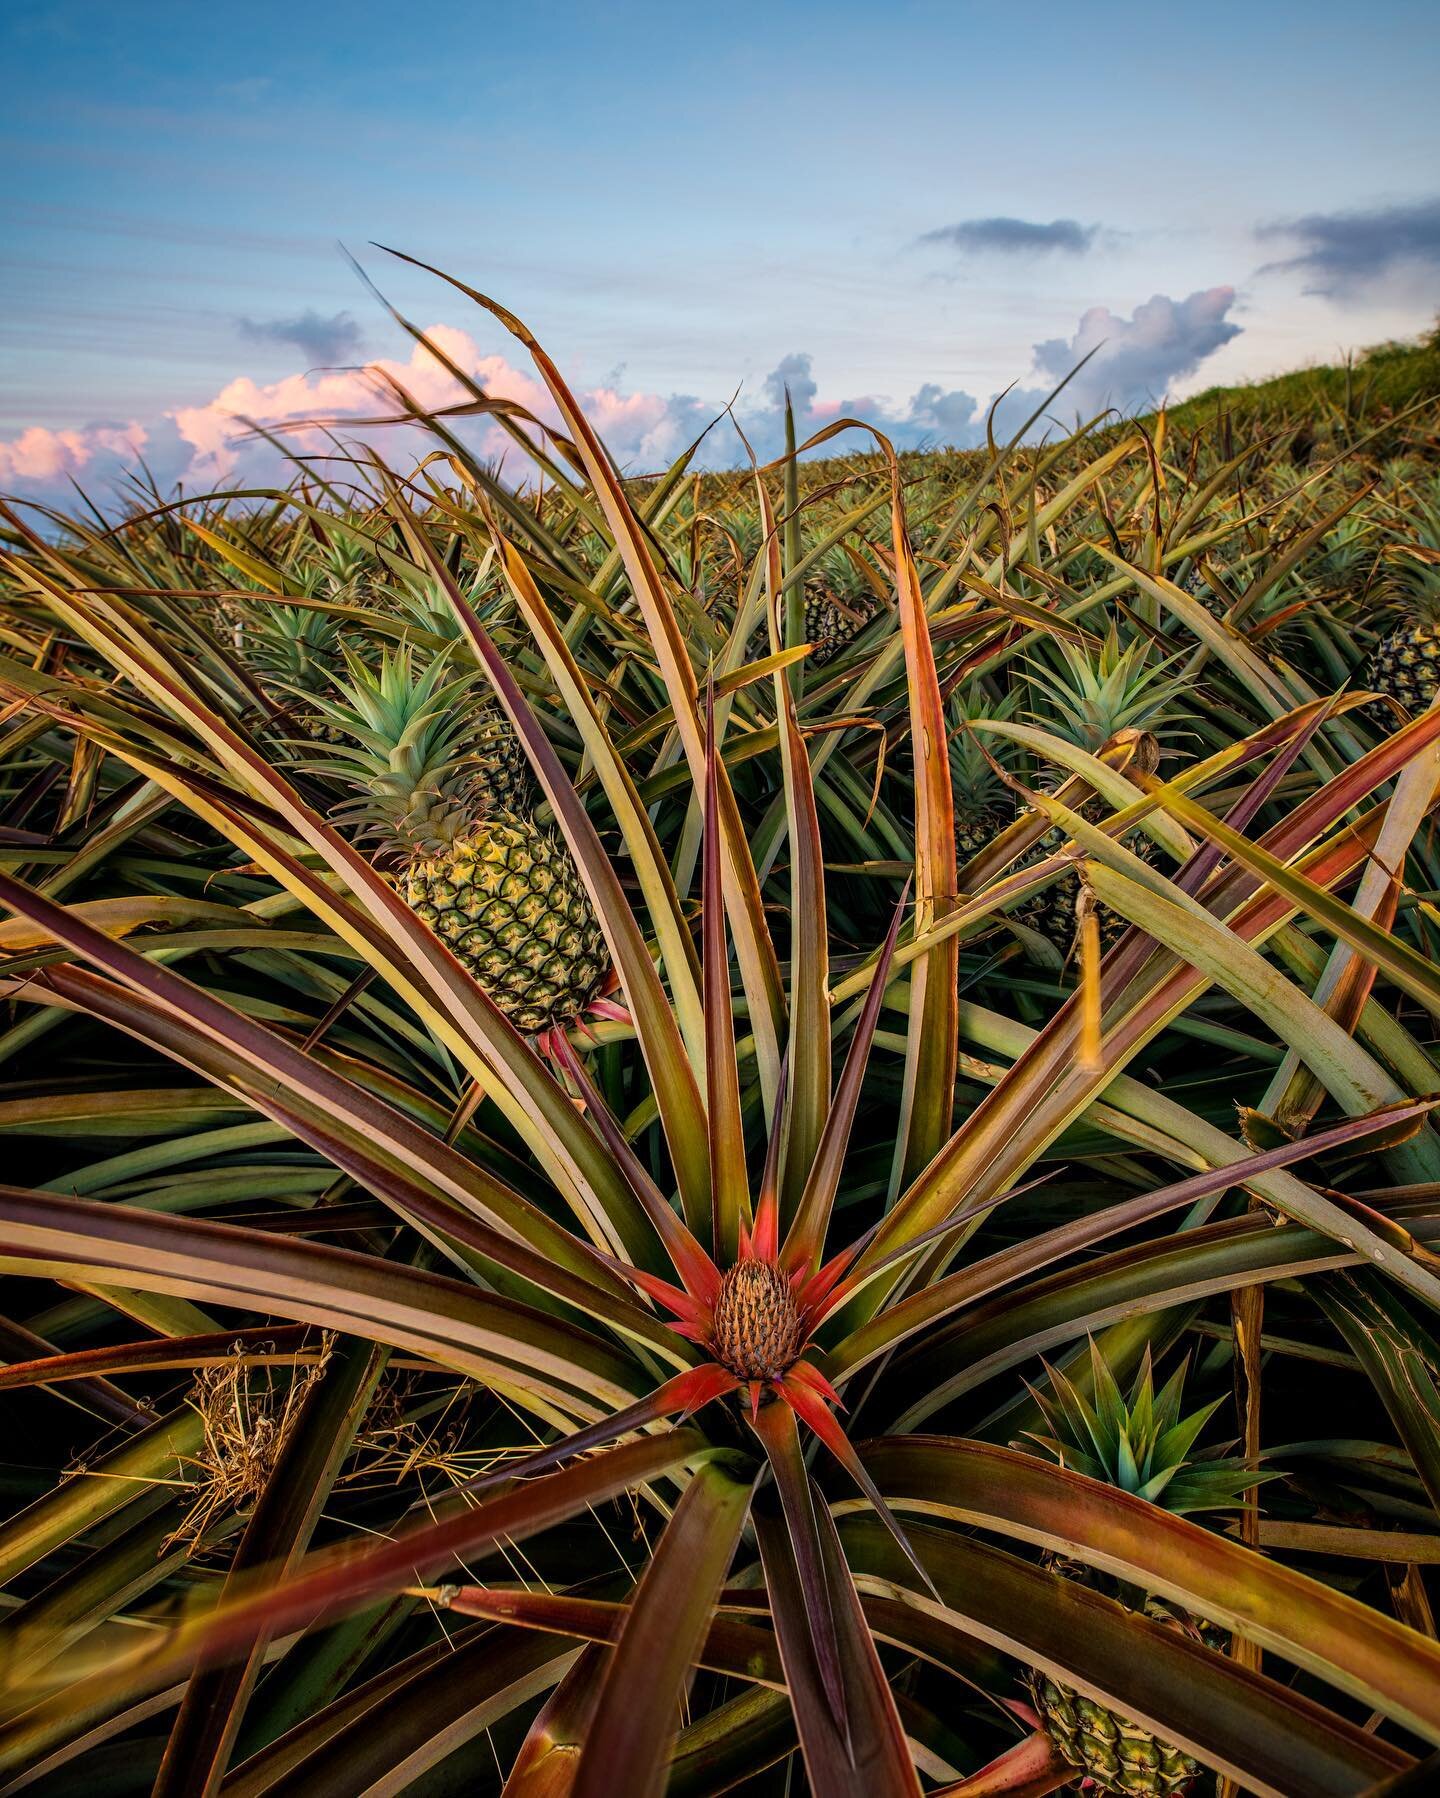 Baby Pineapple enjoying Sunset, Happy Aloha Friday